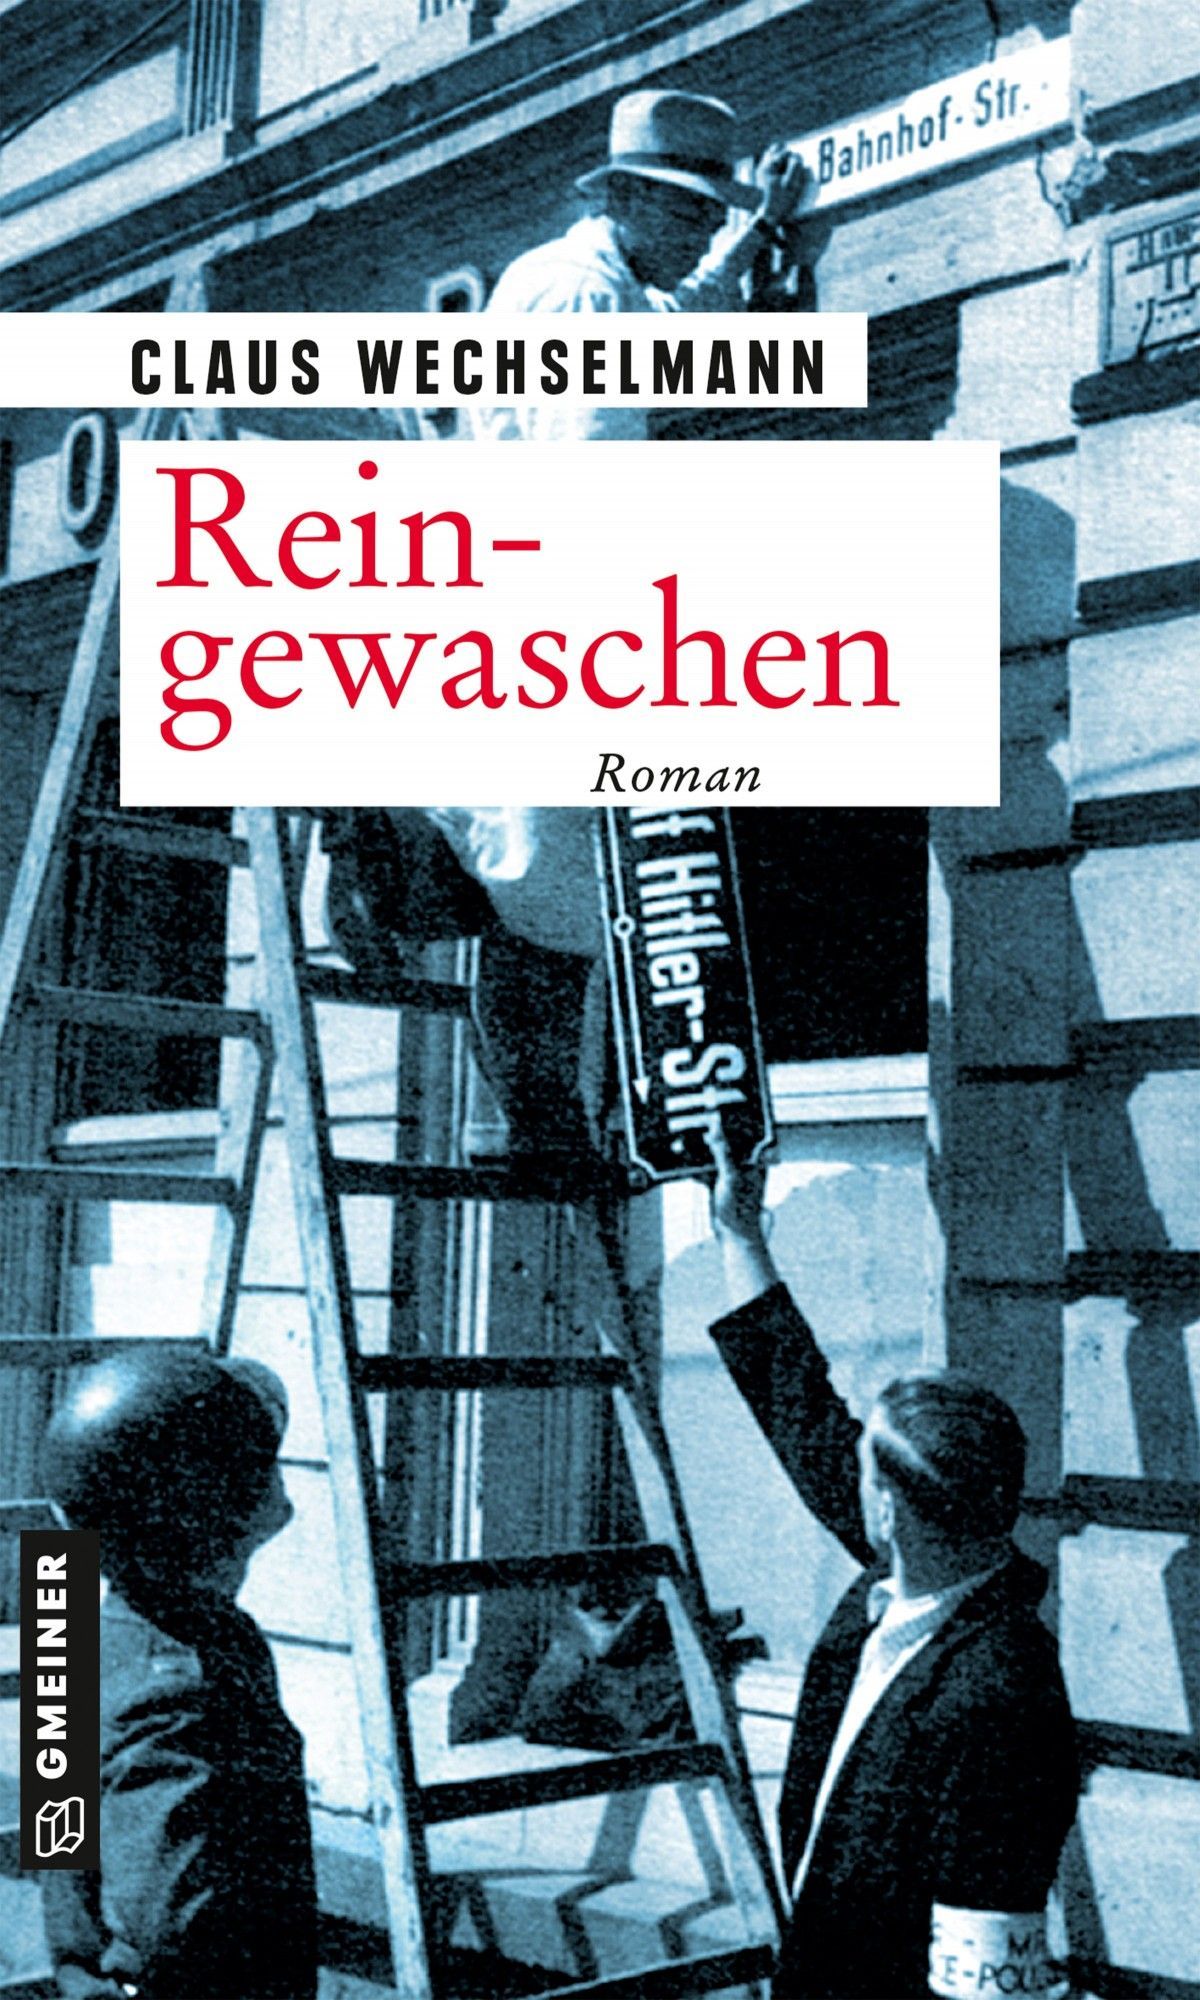 Cover des Romans “Reingewaschen von Claus Wechselmann